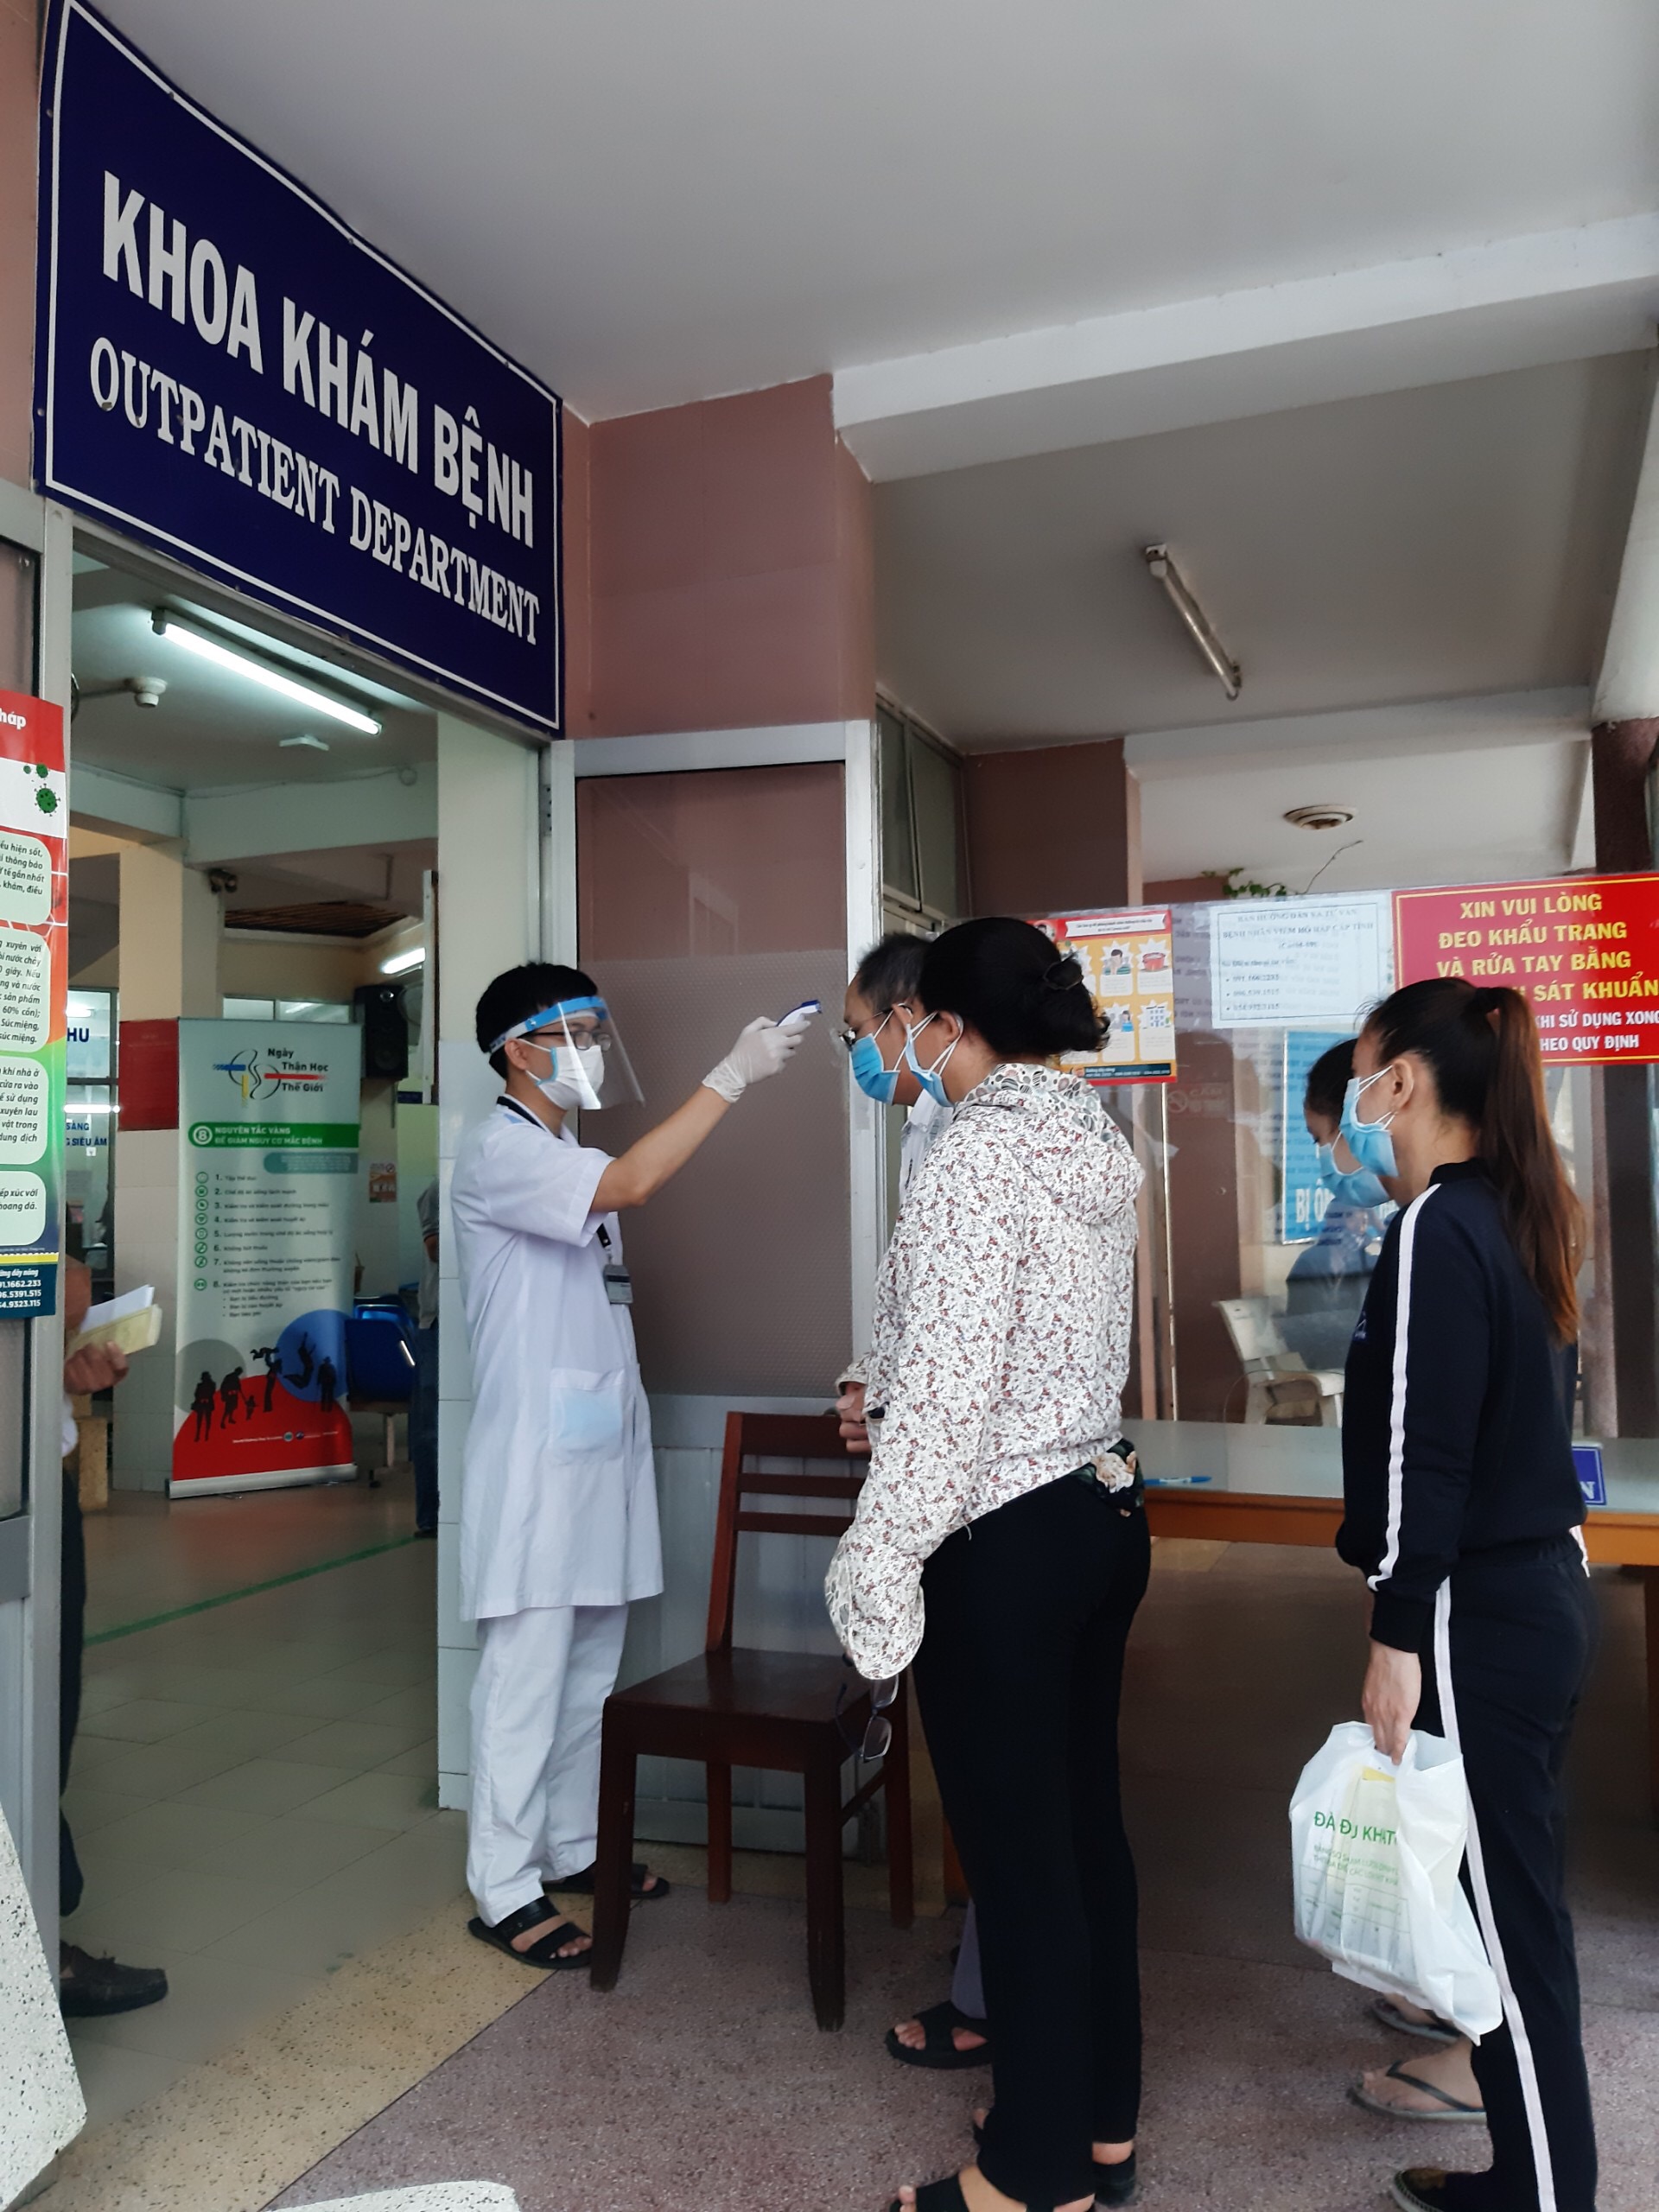 Kiểm tra thân nhiệt người đến khám bệnh tại Bệnh viện Đa khoa tỉnh Khánh Hòa.